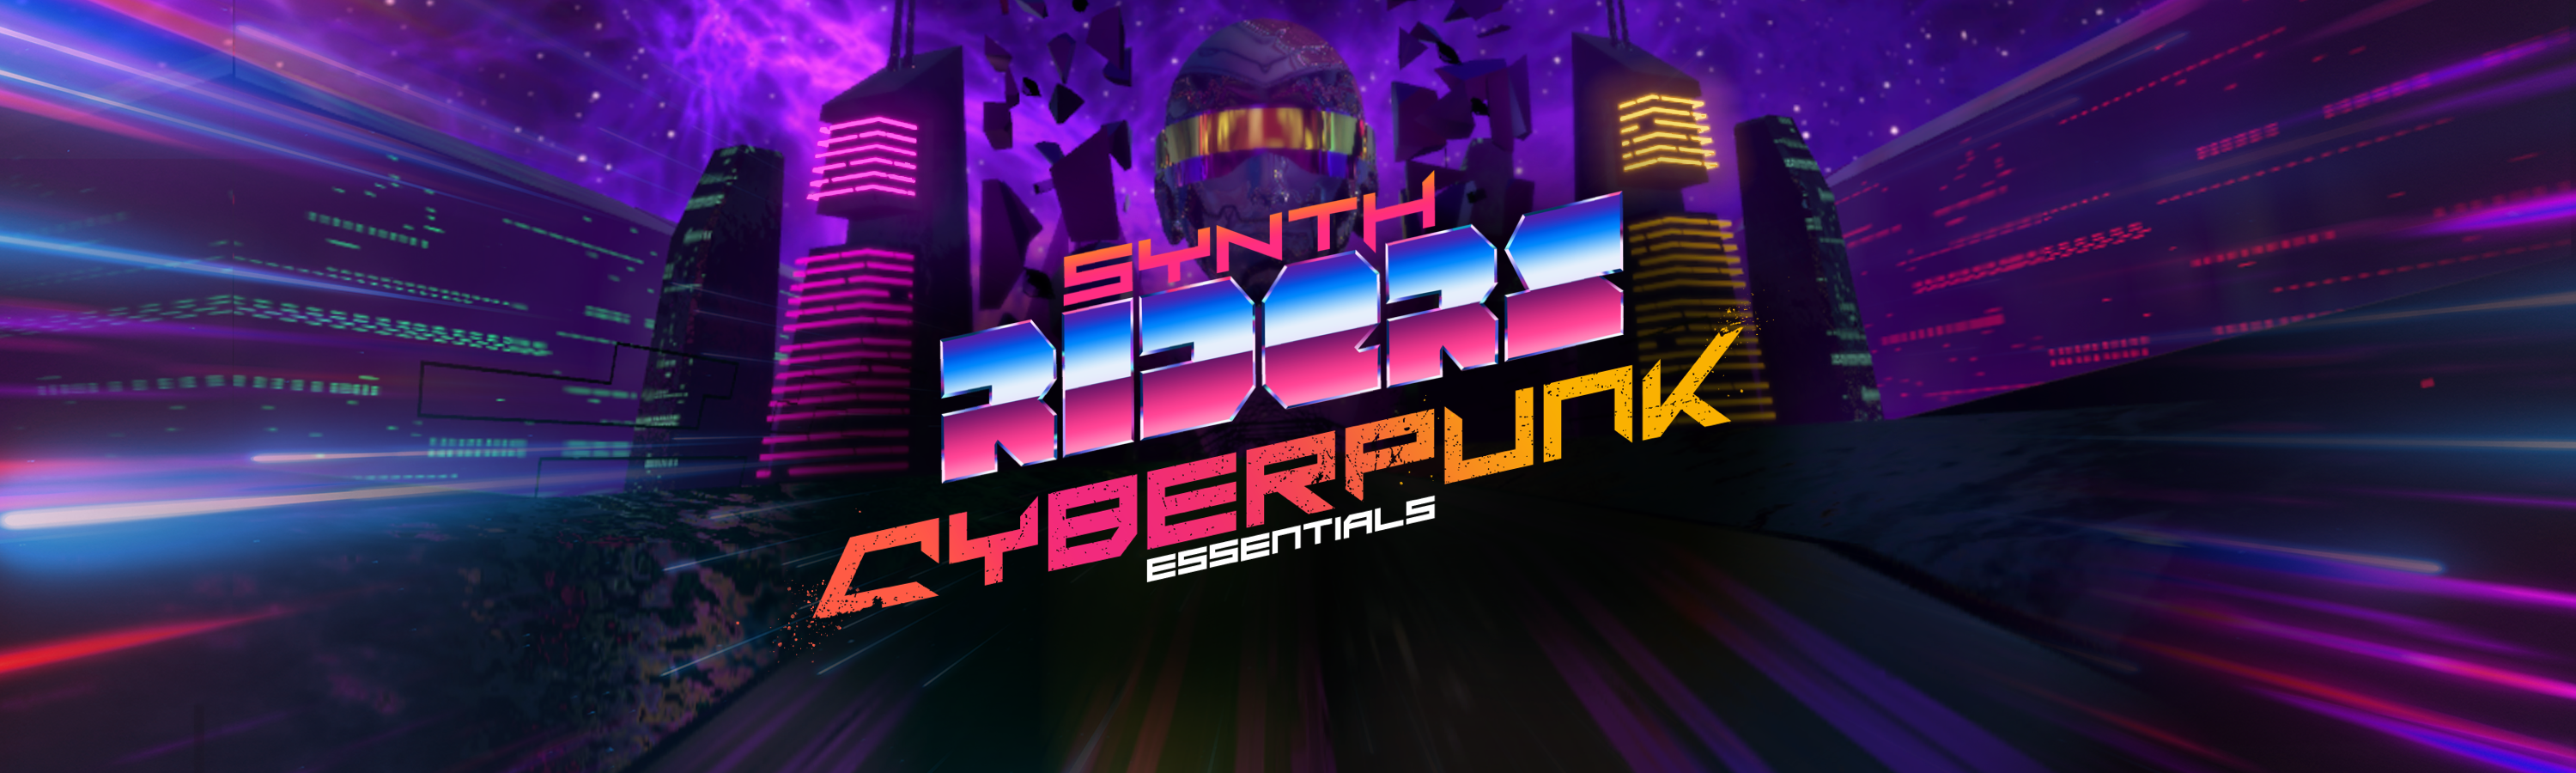 Synth Riders Cyberpunk Essentials DLC